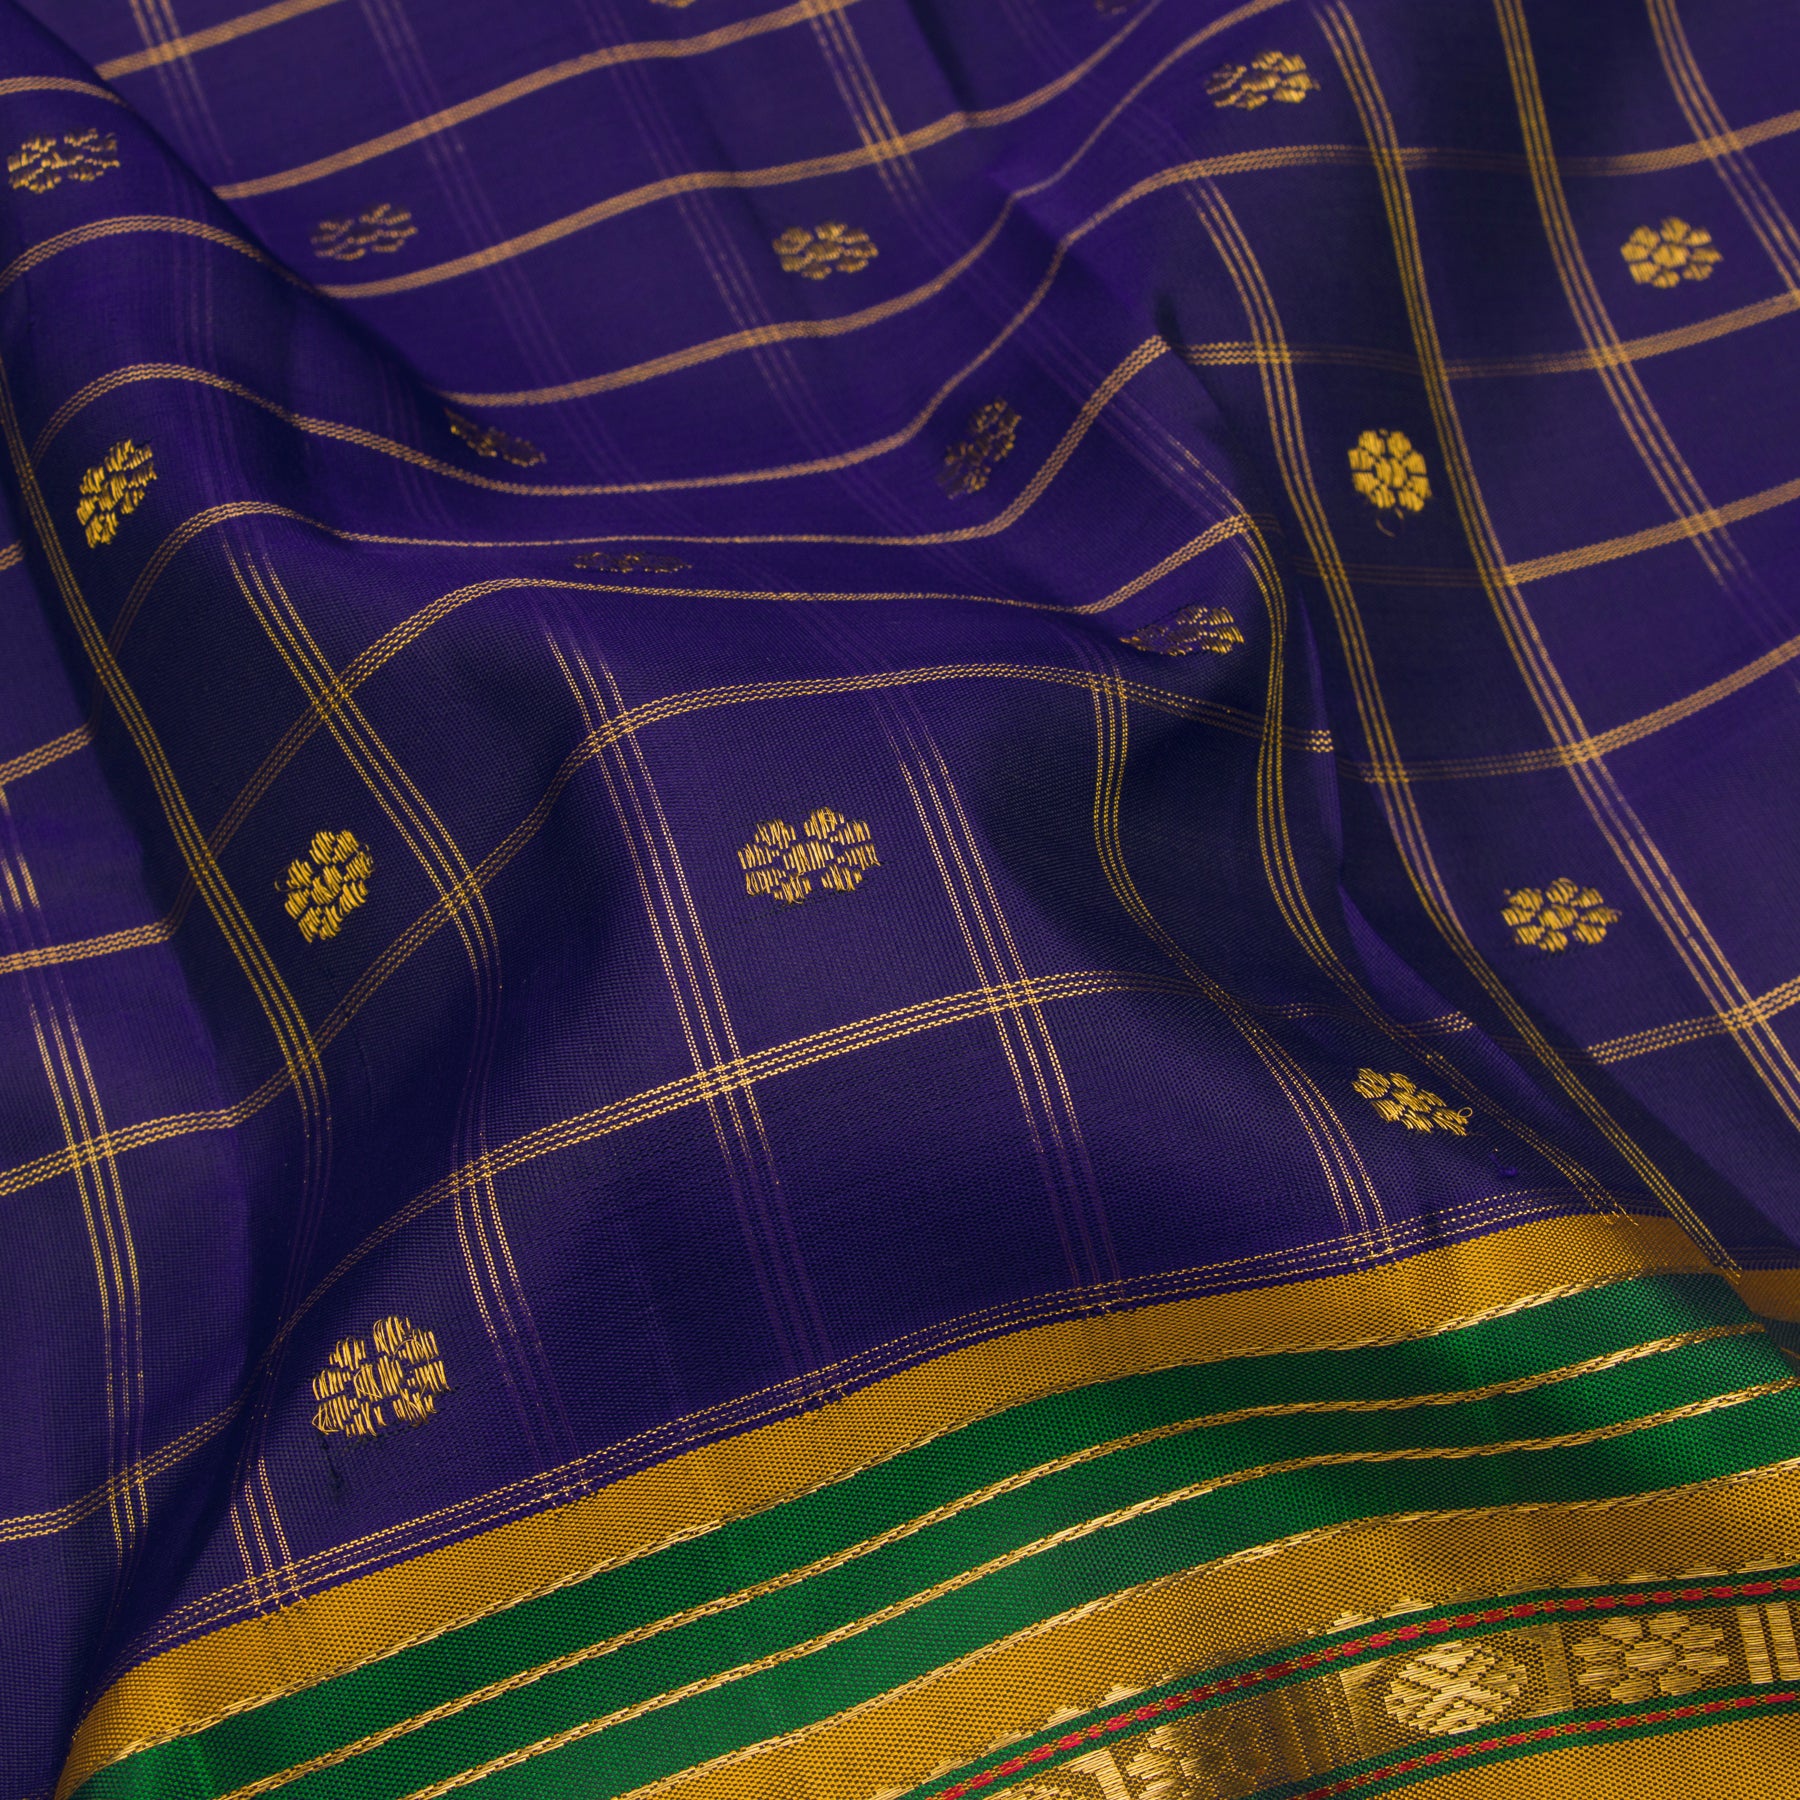 Kanakavalli Kanjivaram Silk Sari 23-040-HS001-03394 - Fabric View